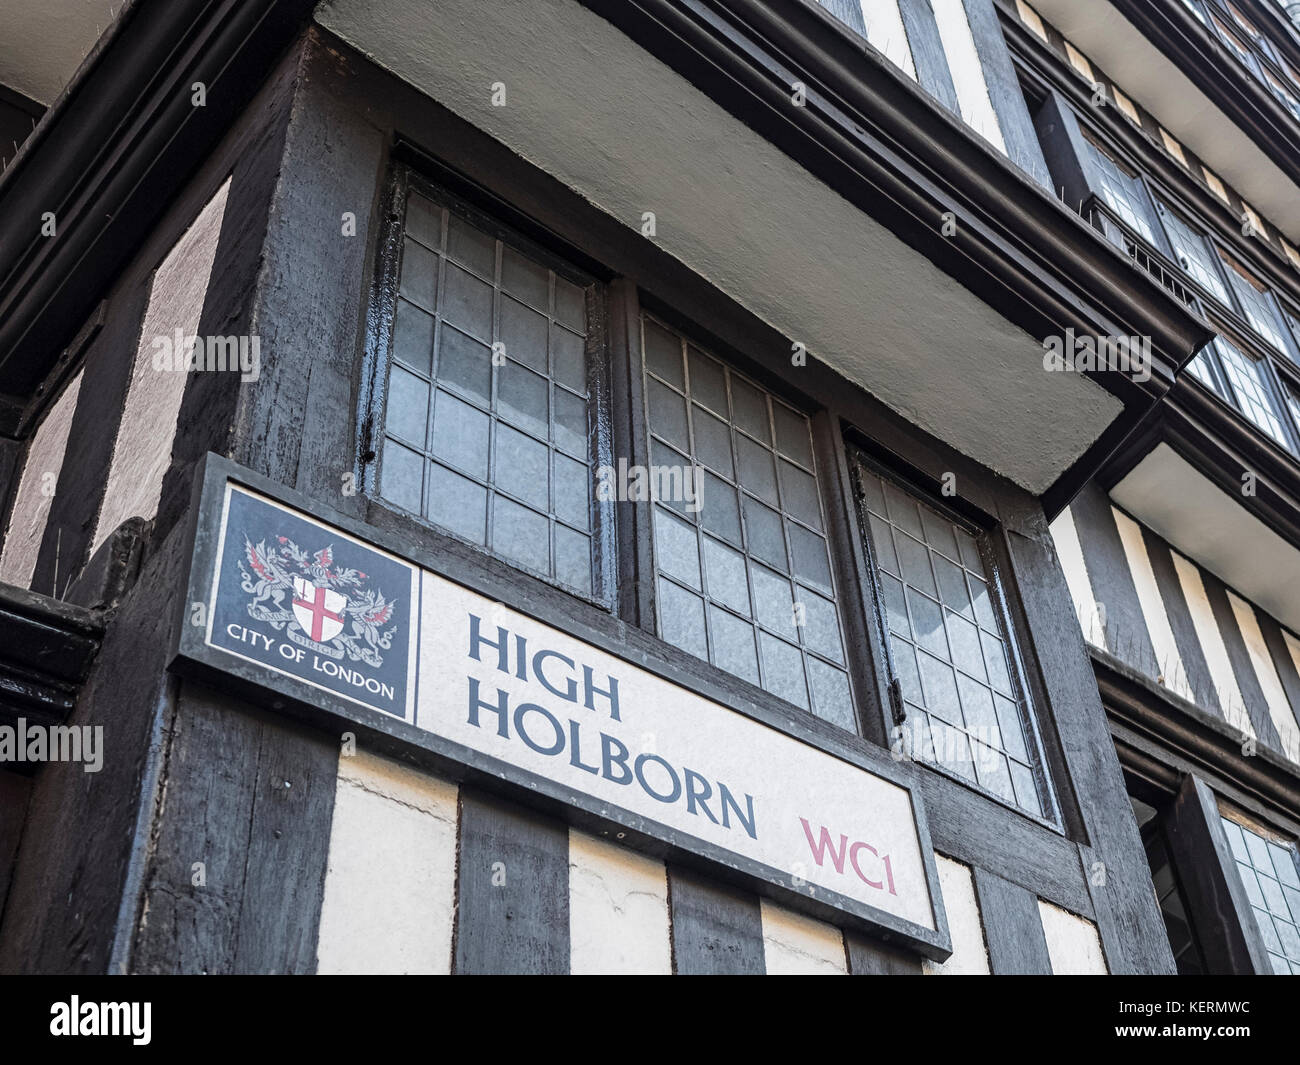 STAPLE INN BUILDING, HIGH HOLBORN, LONDON:  High Holborn Street Sign on the Tudor Grade 1 Listed Building Stock Photo